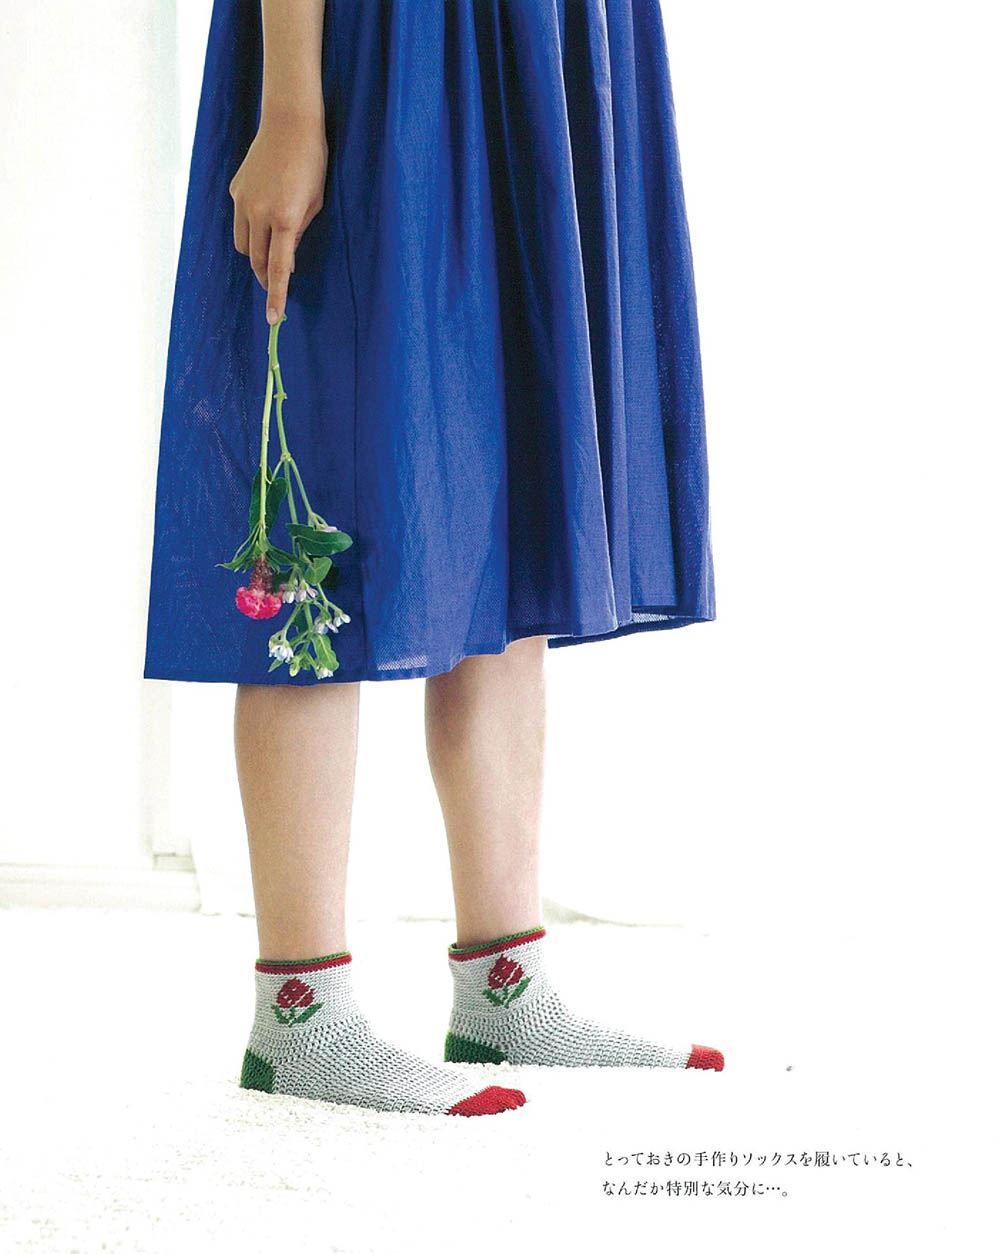 SELECT COLLECTION Crochet socks (Asahi original)